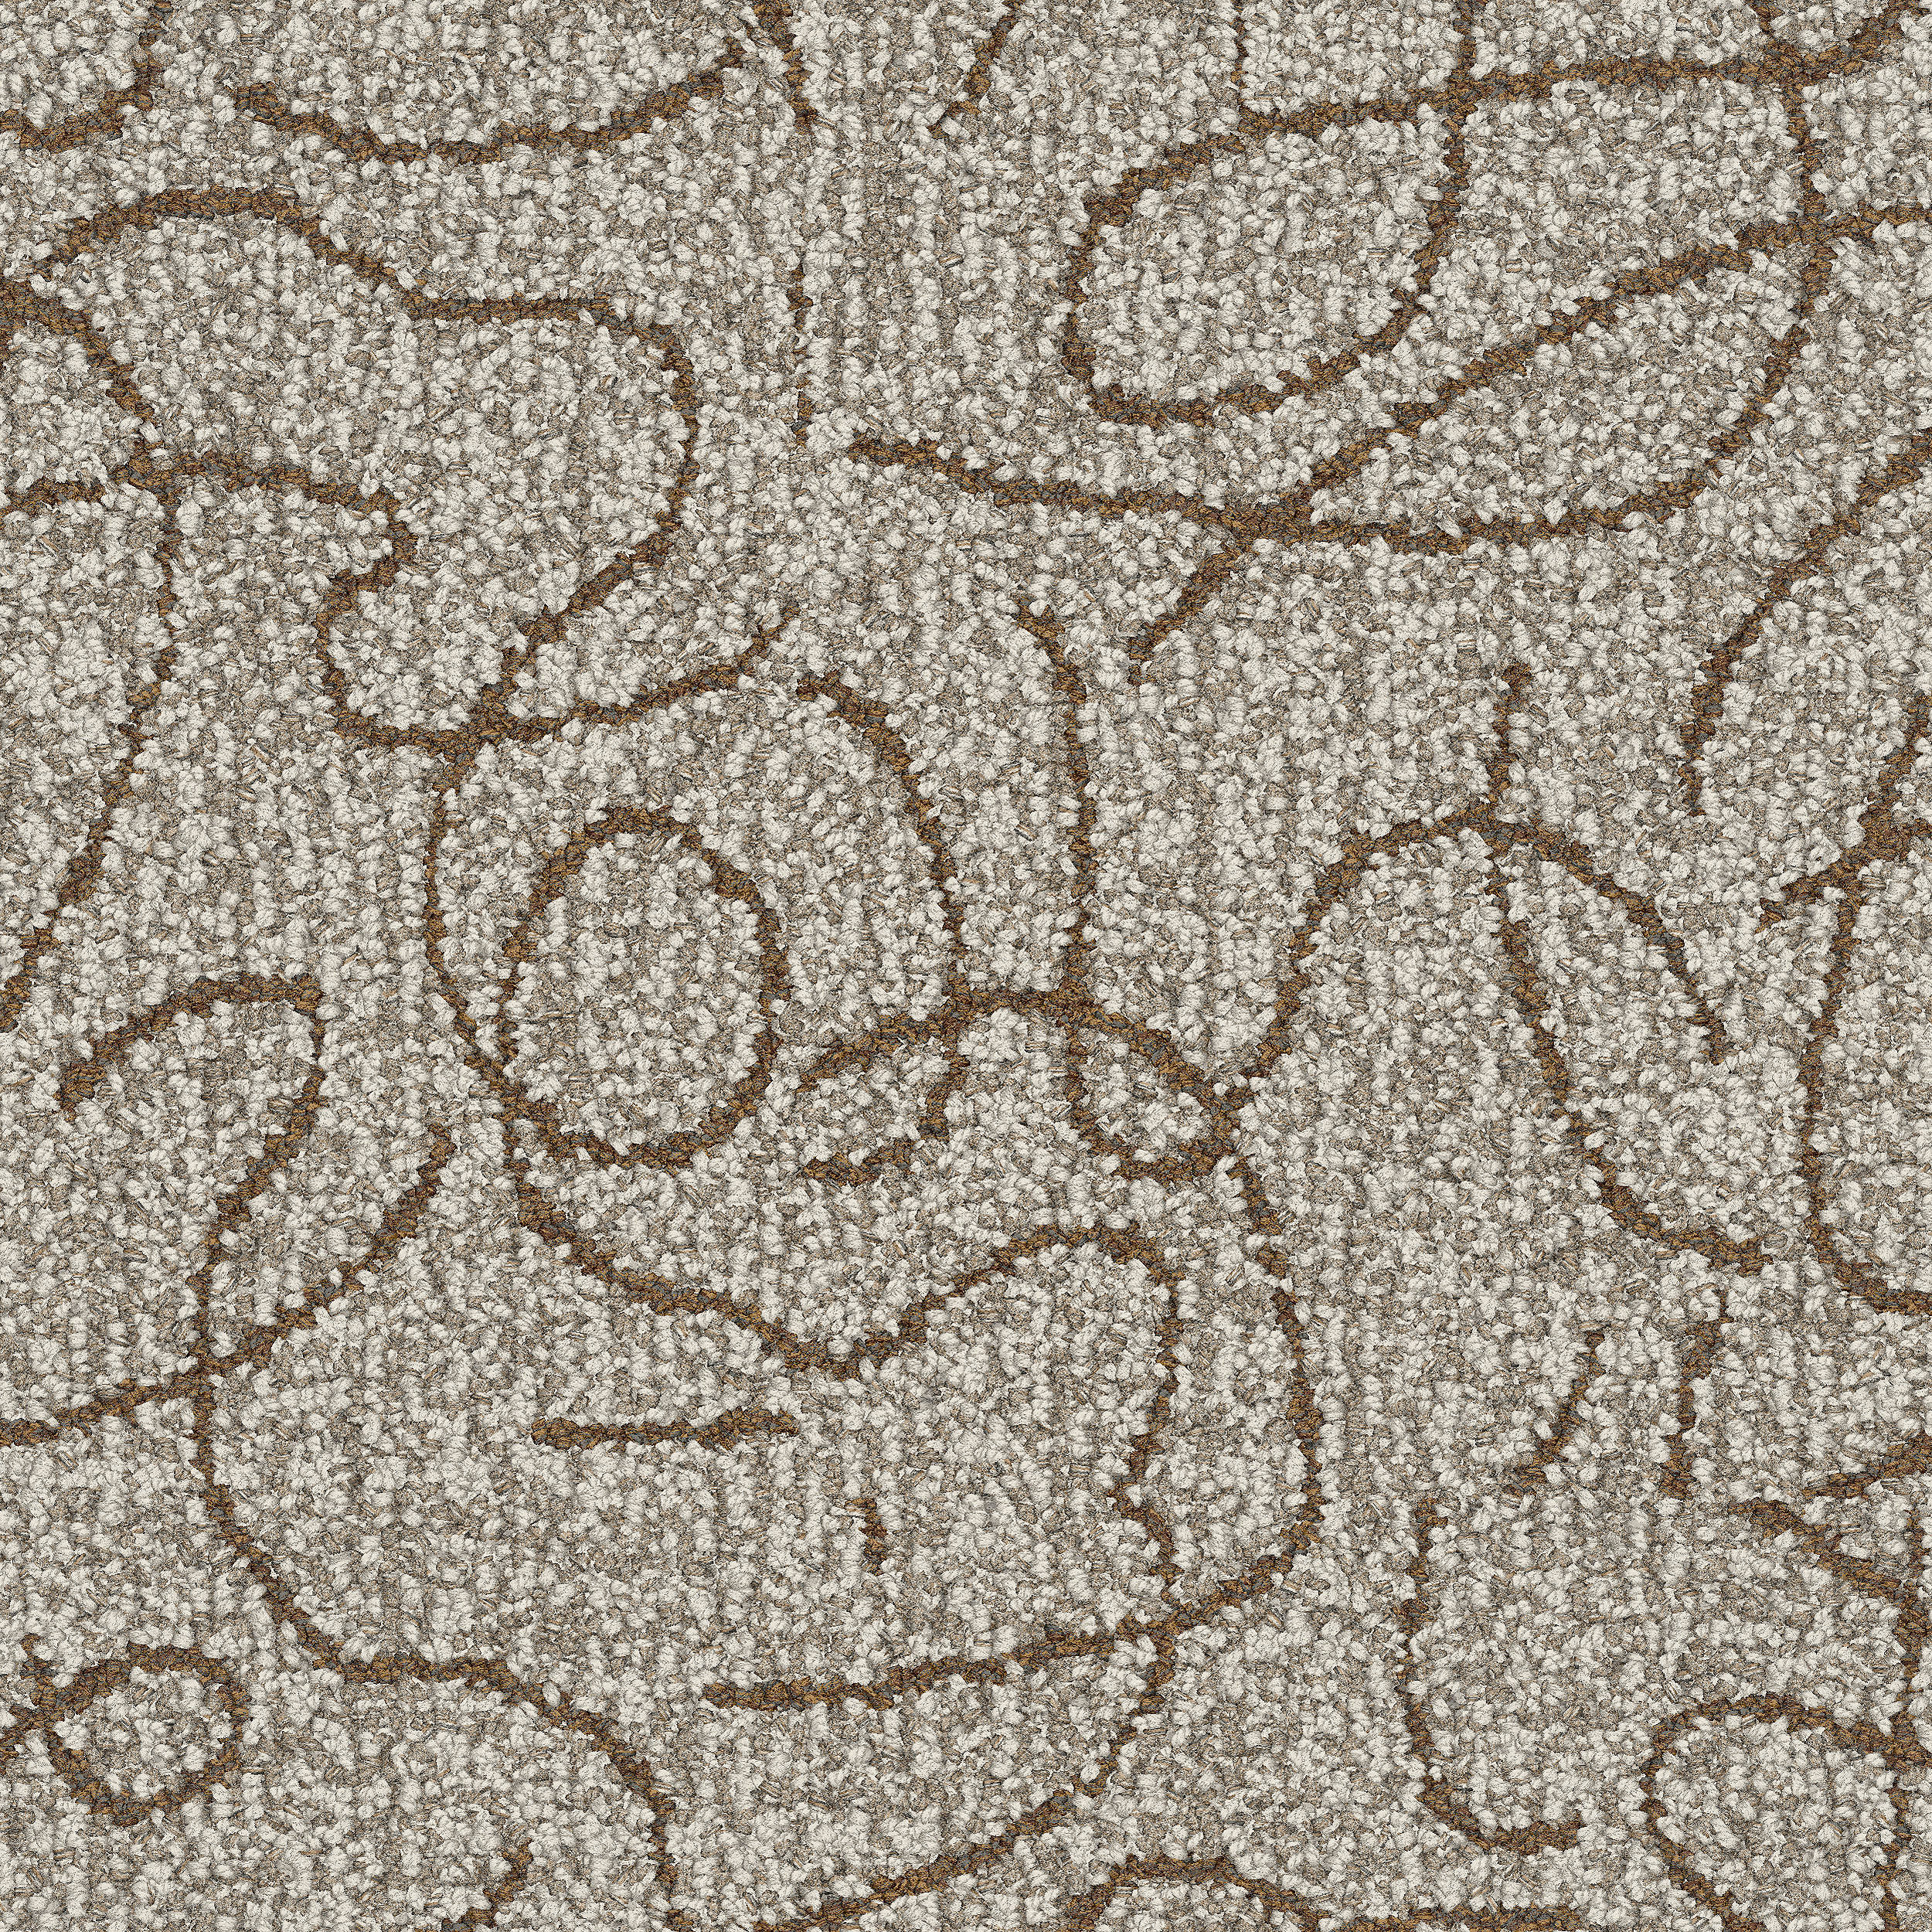 Unspooled carpet tile in Oatmeal Bildnummer 4